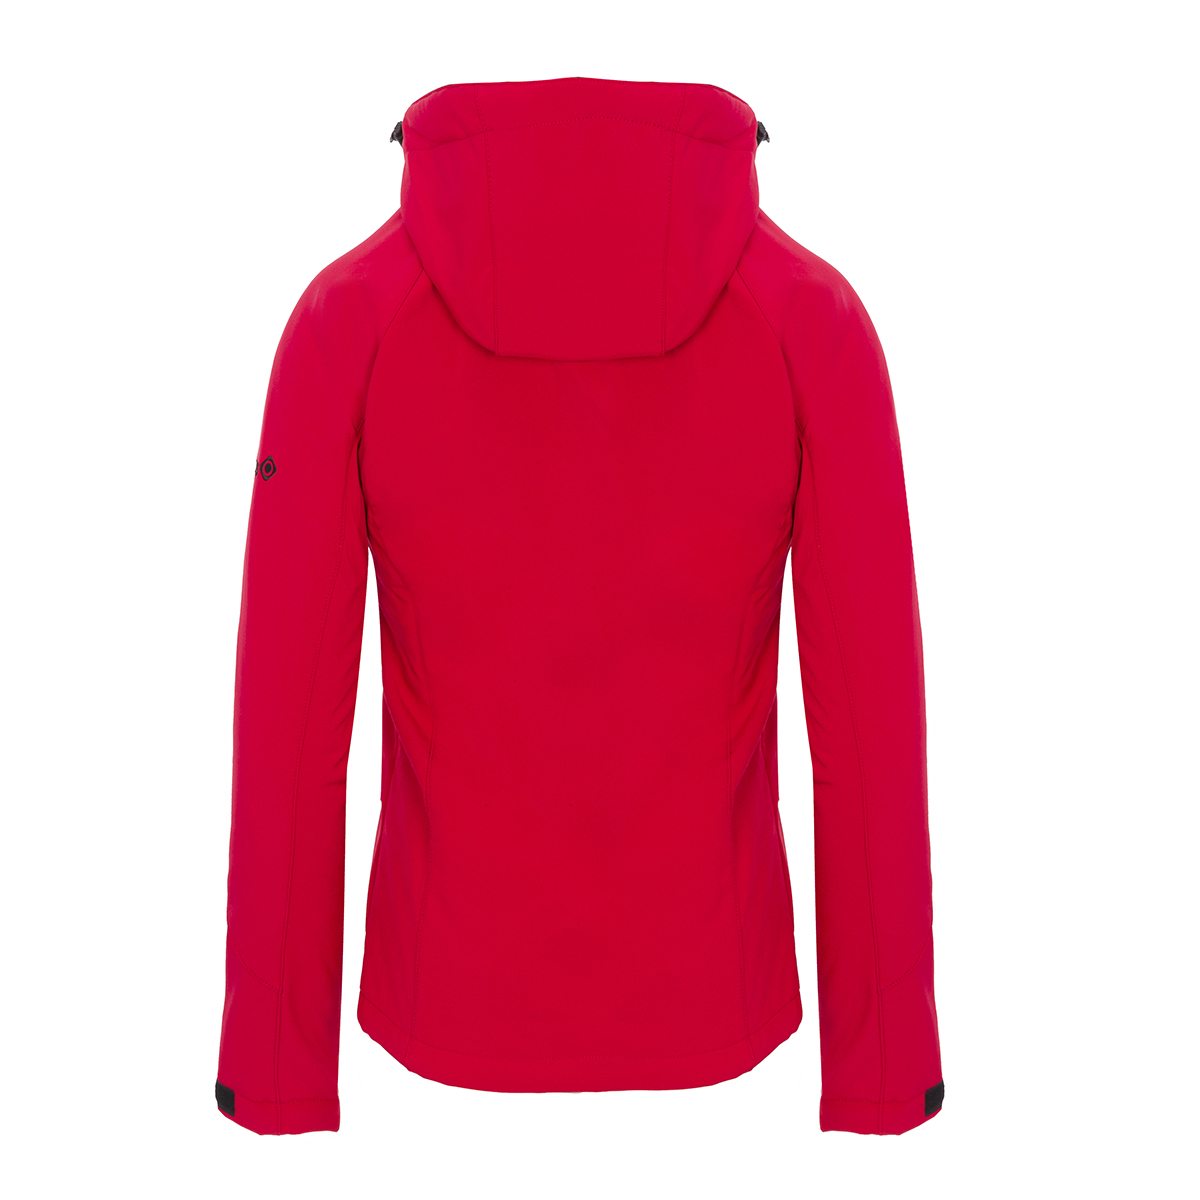 Izas Oshawa Women's Hooded Softshell Jacket (Large, Red/Red) - image 2 of 4